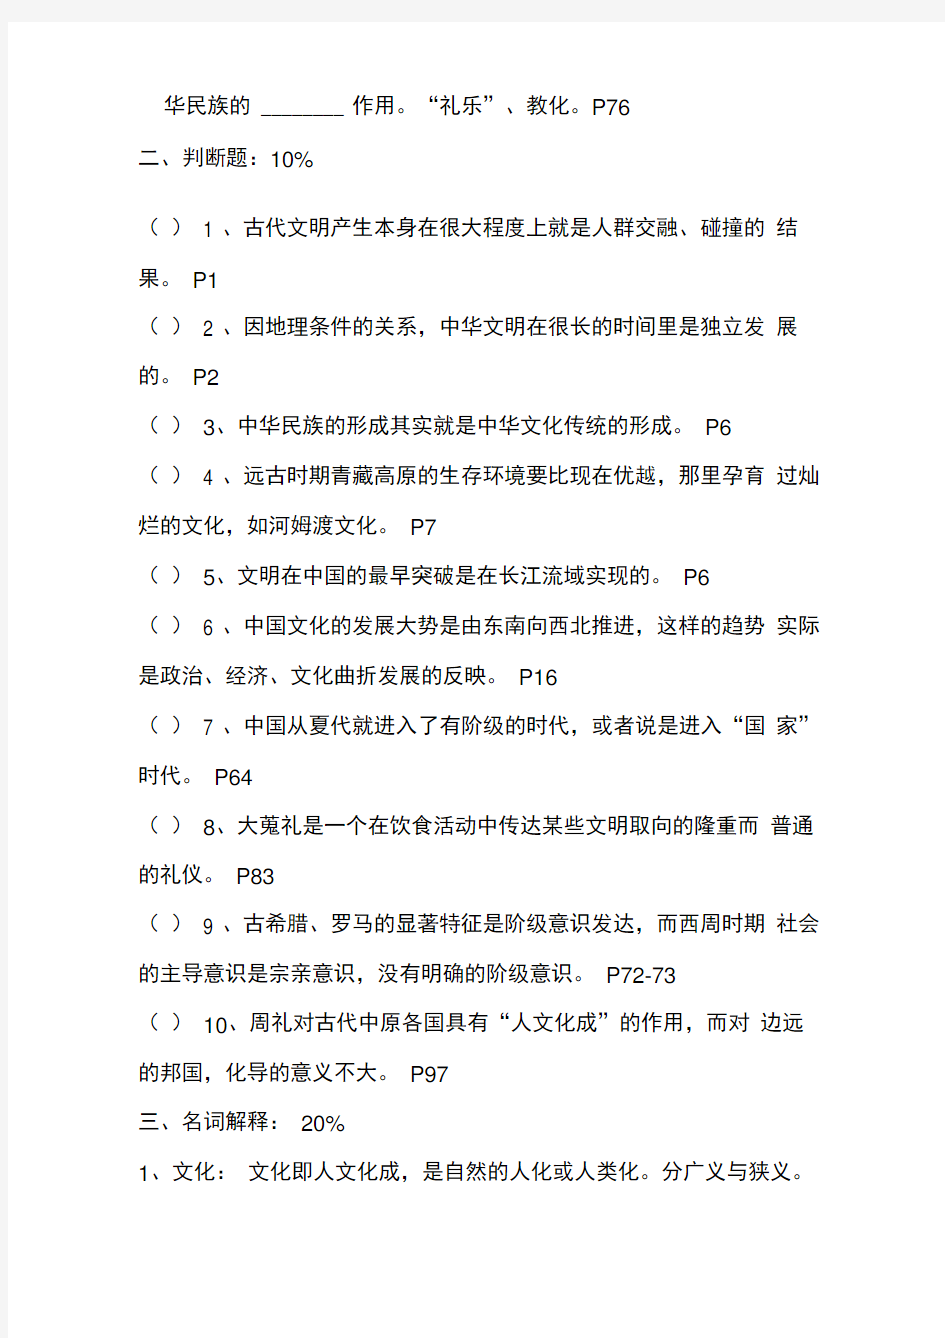 电大汉语言文学中国文化概观复习资料